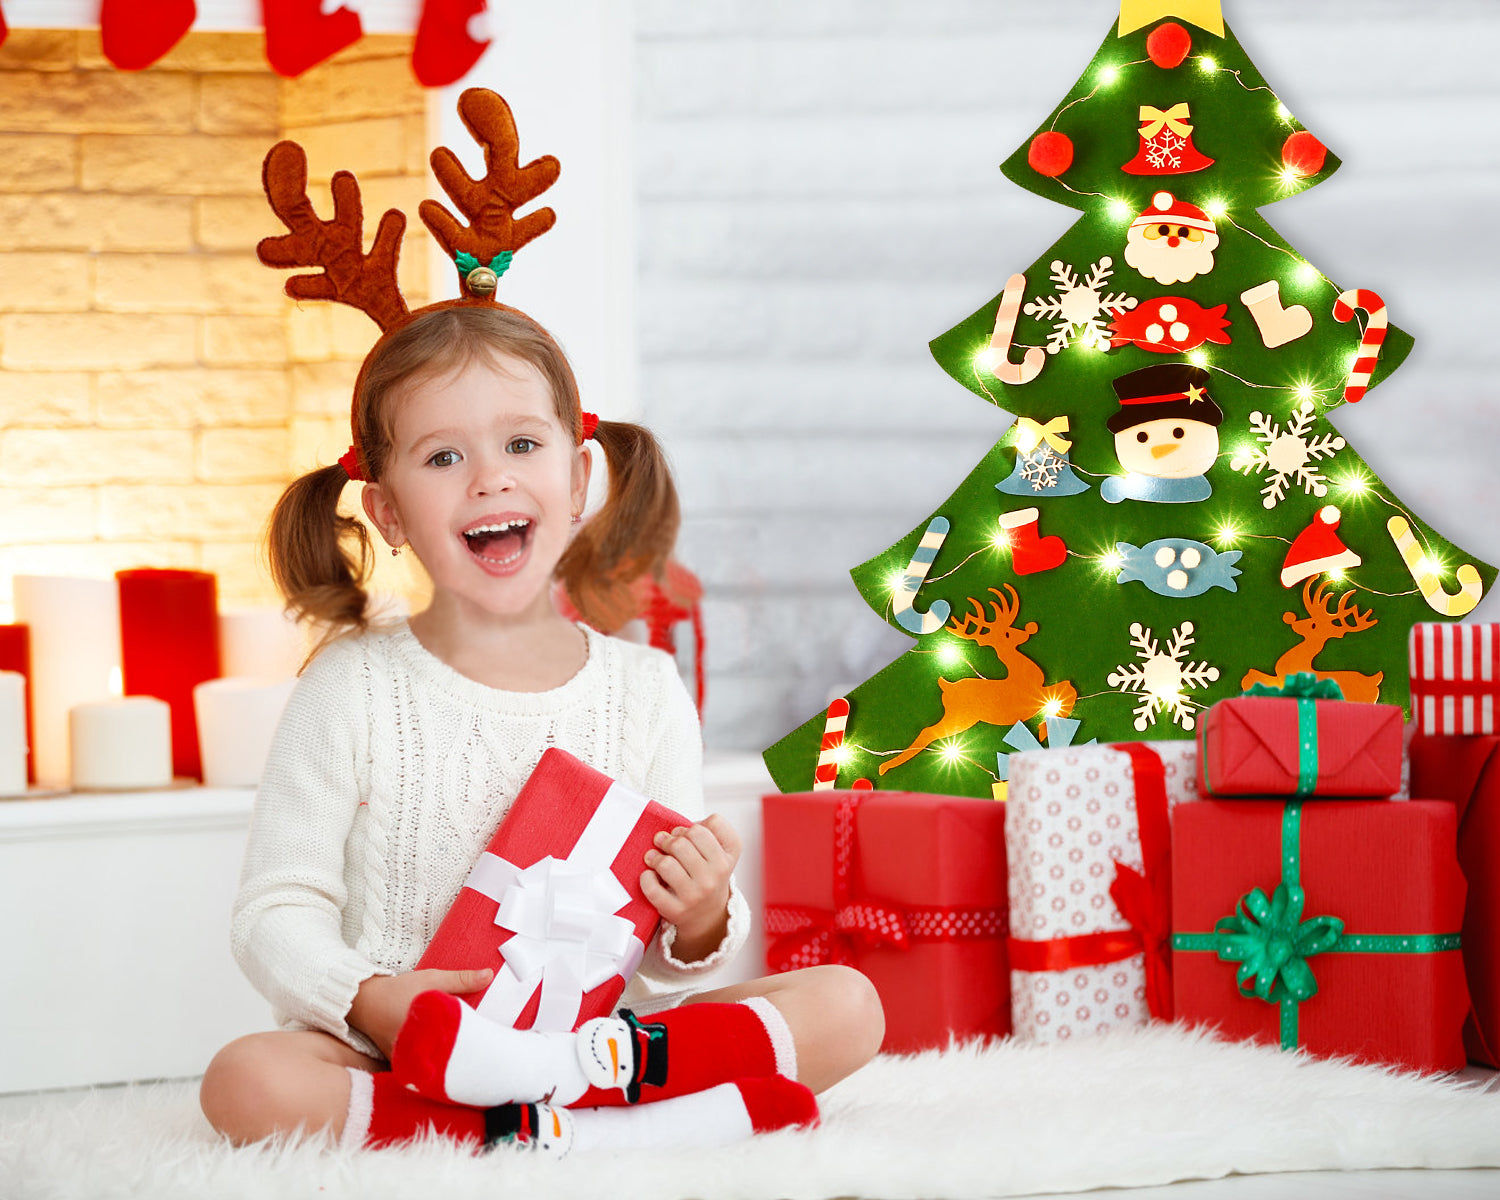 SOLEDI DIY Felt Christmas Tree For Children